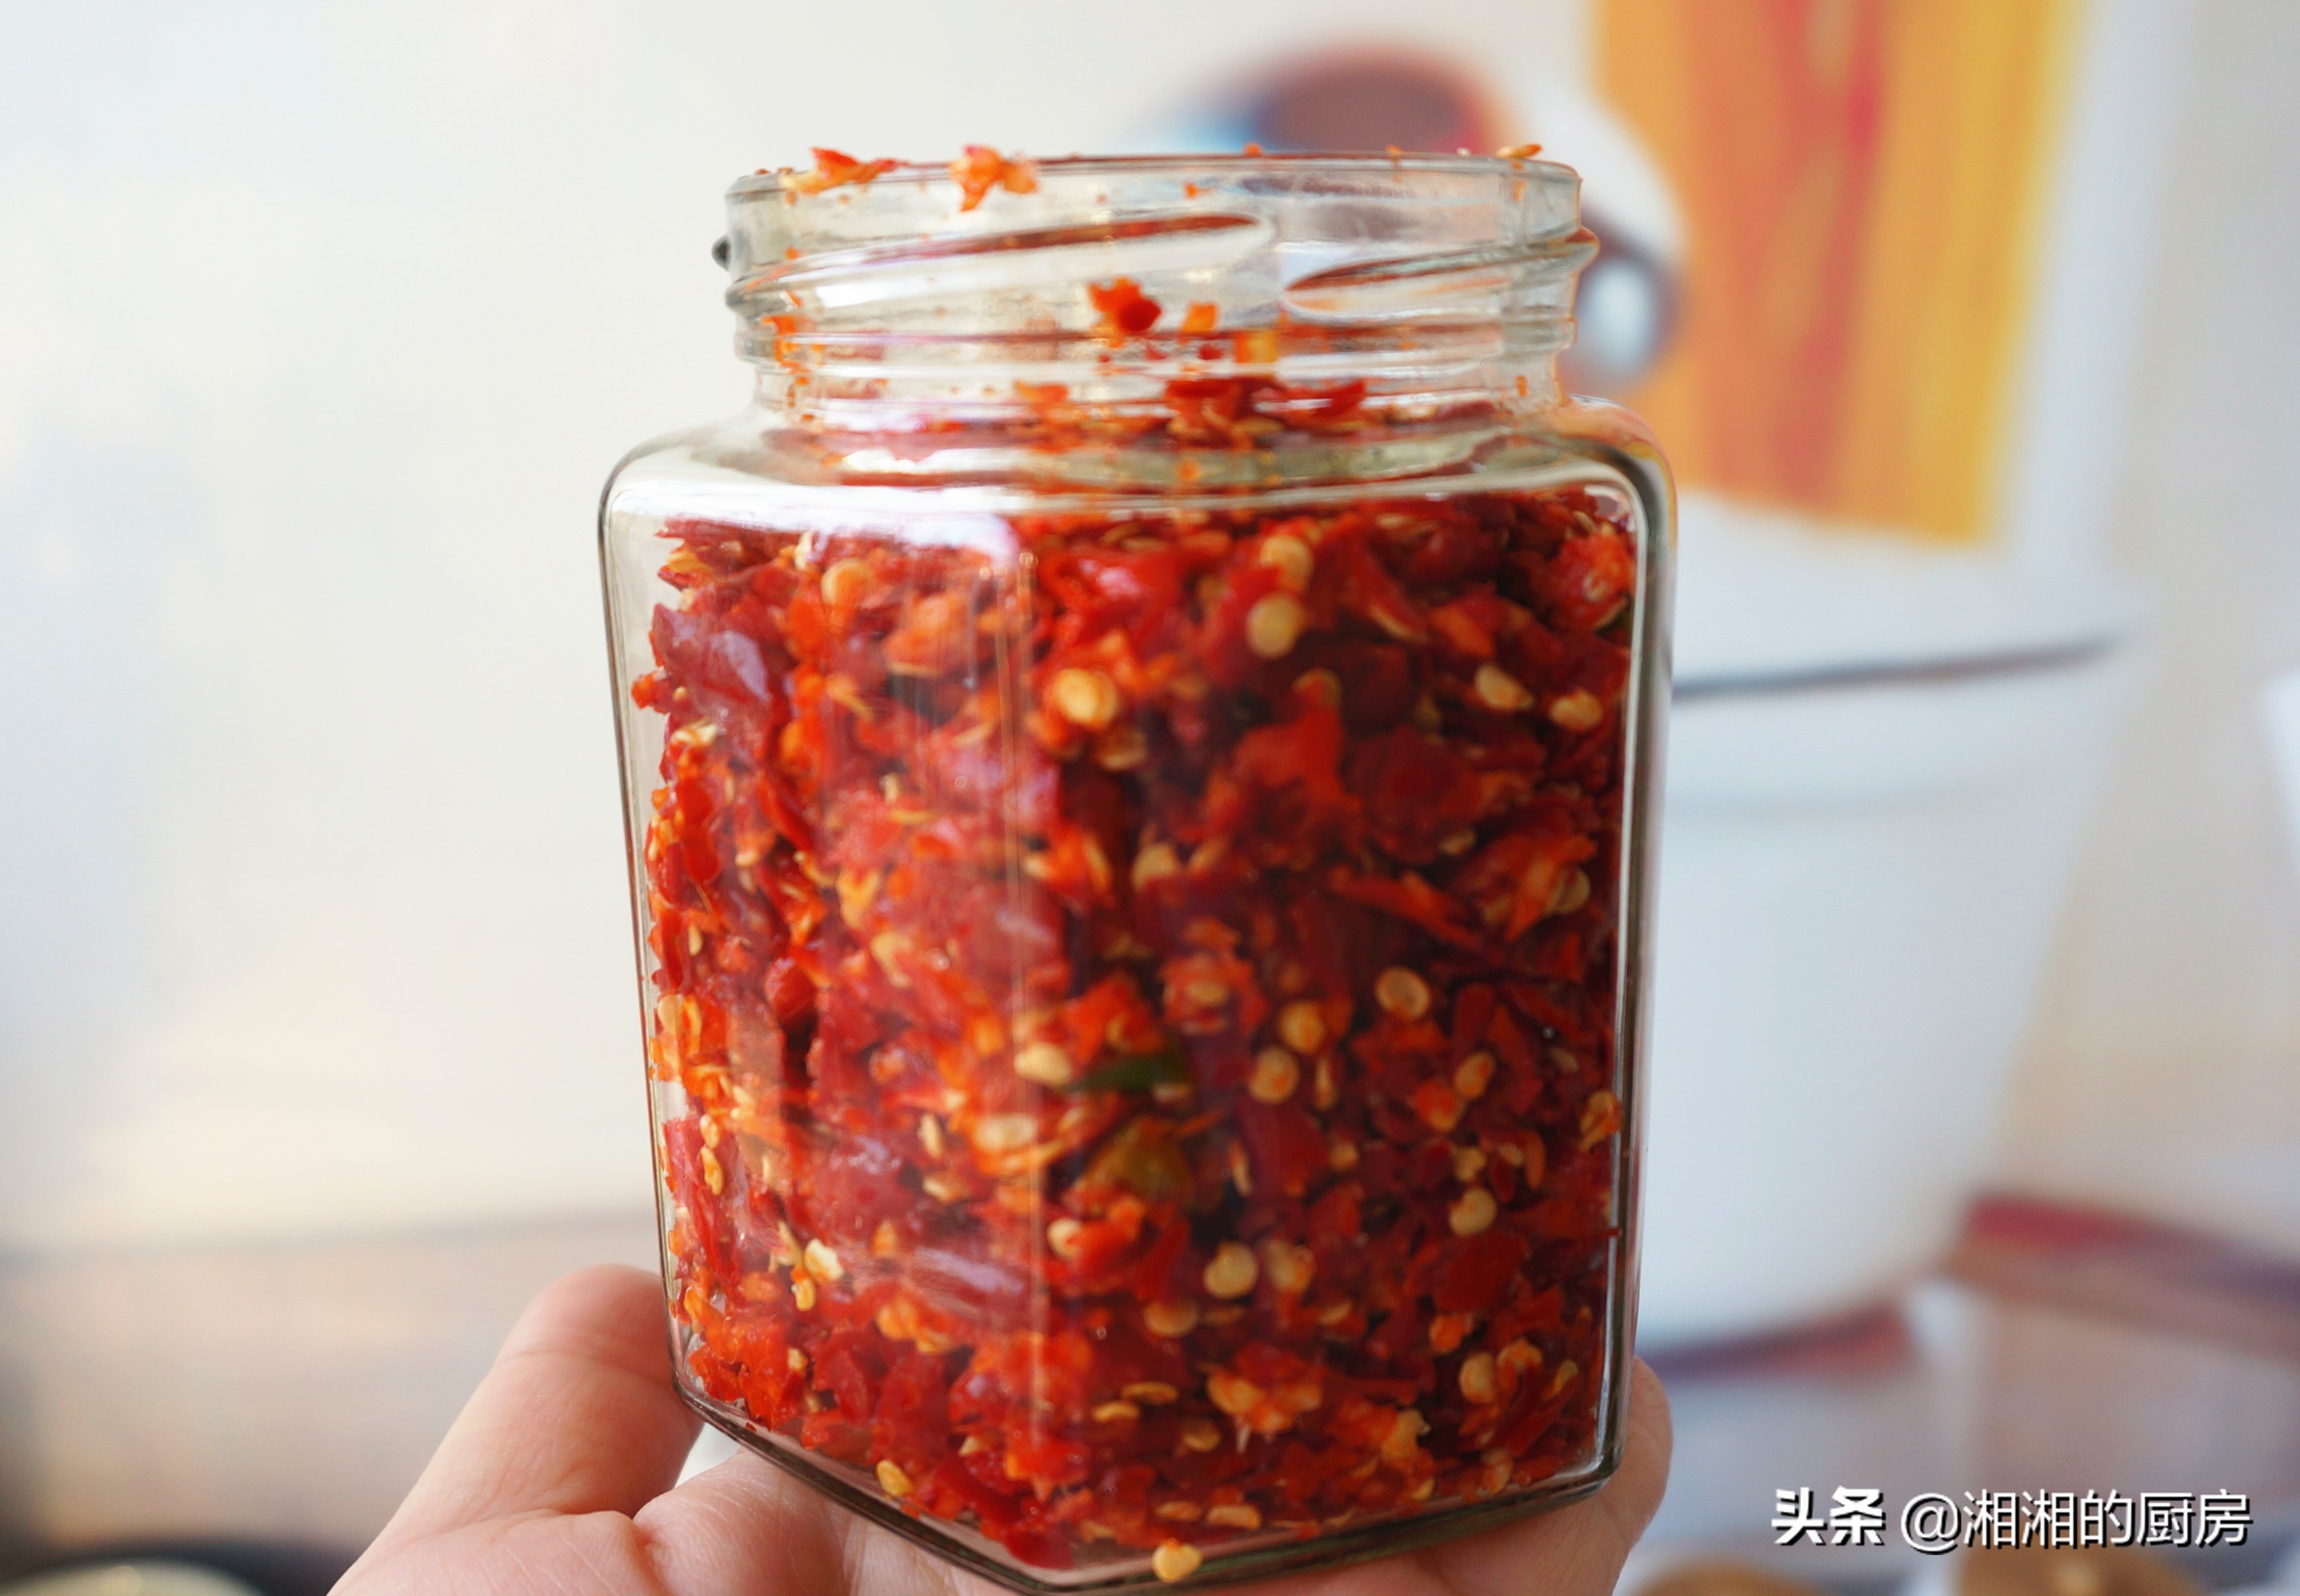 湖南正宗剁辣椒的做法，步骤详细，无添加剂，放到明年都不坏